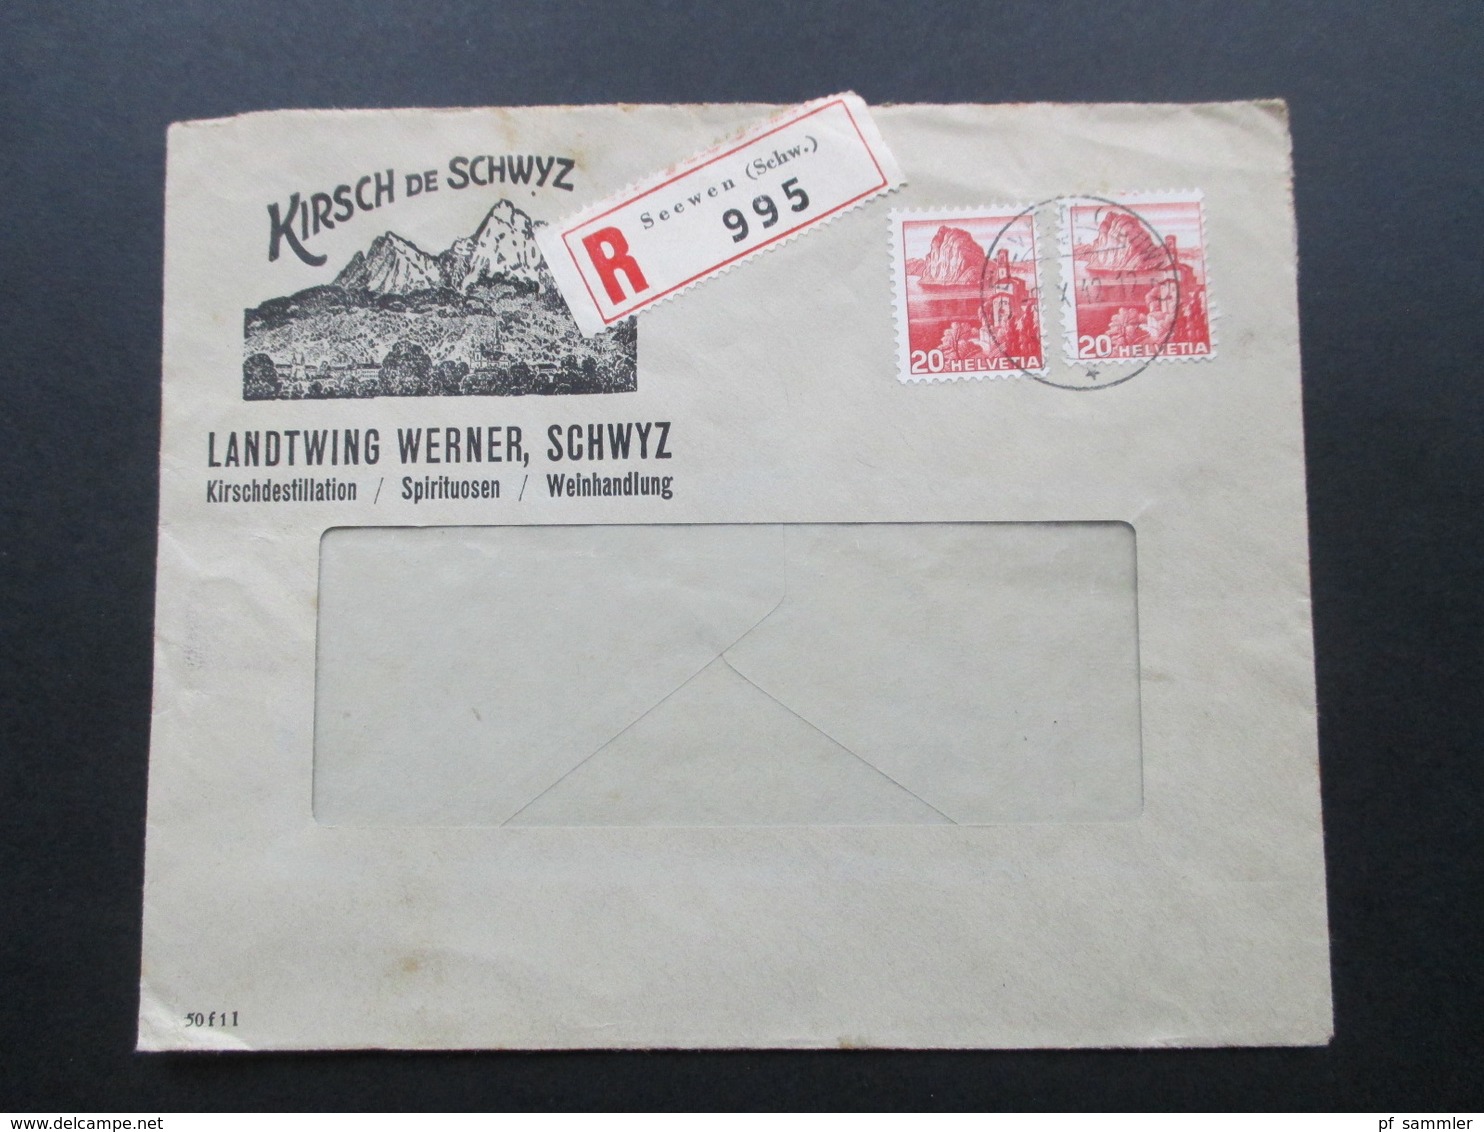 Schweiz 1942 Firmenbrief Kirsch De Schwyz Landtwing Werner. Kirschdetillation, Spirituosen, Weinhandlung. R-Brief Seewen - Storia Postale